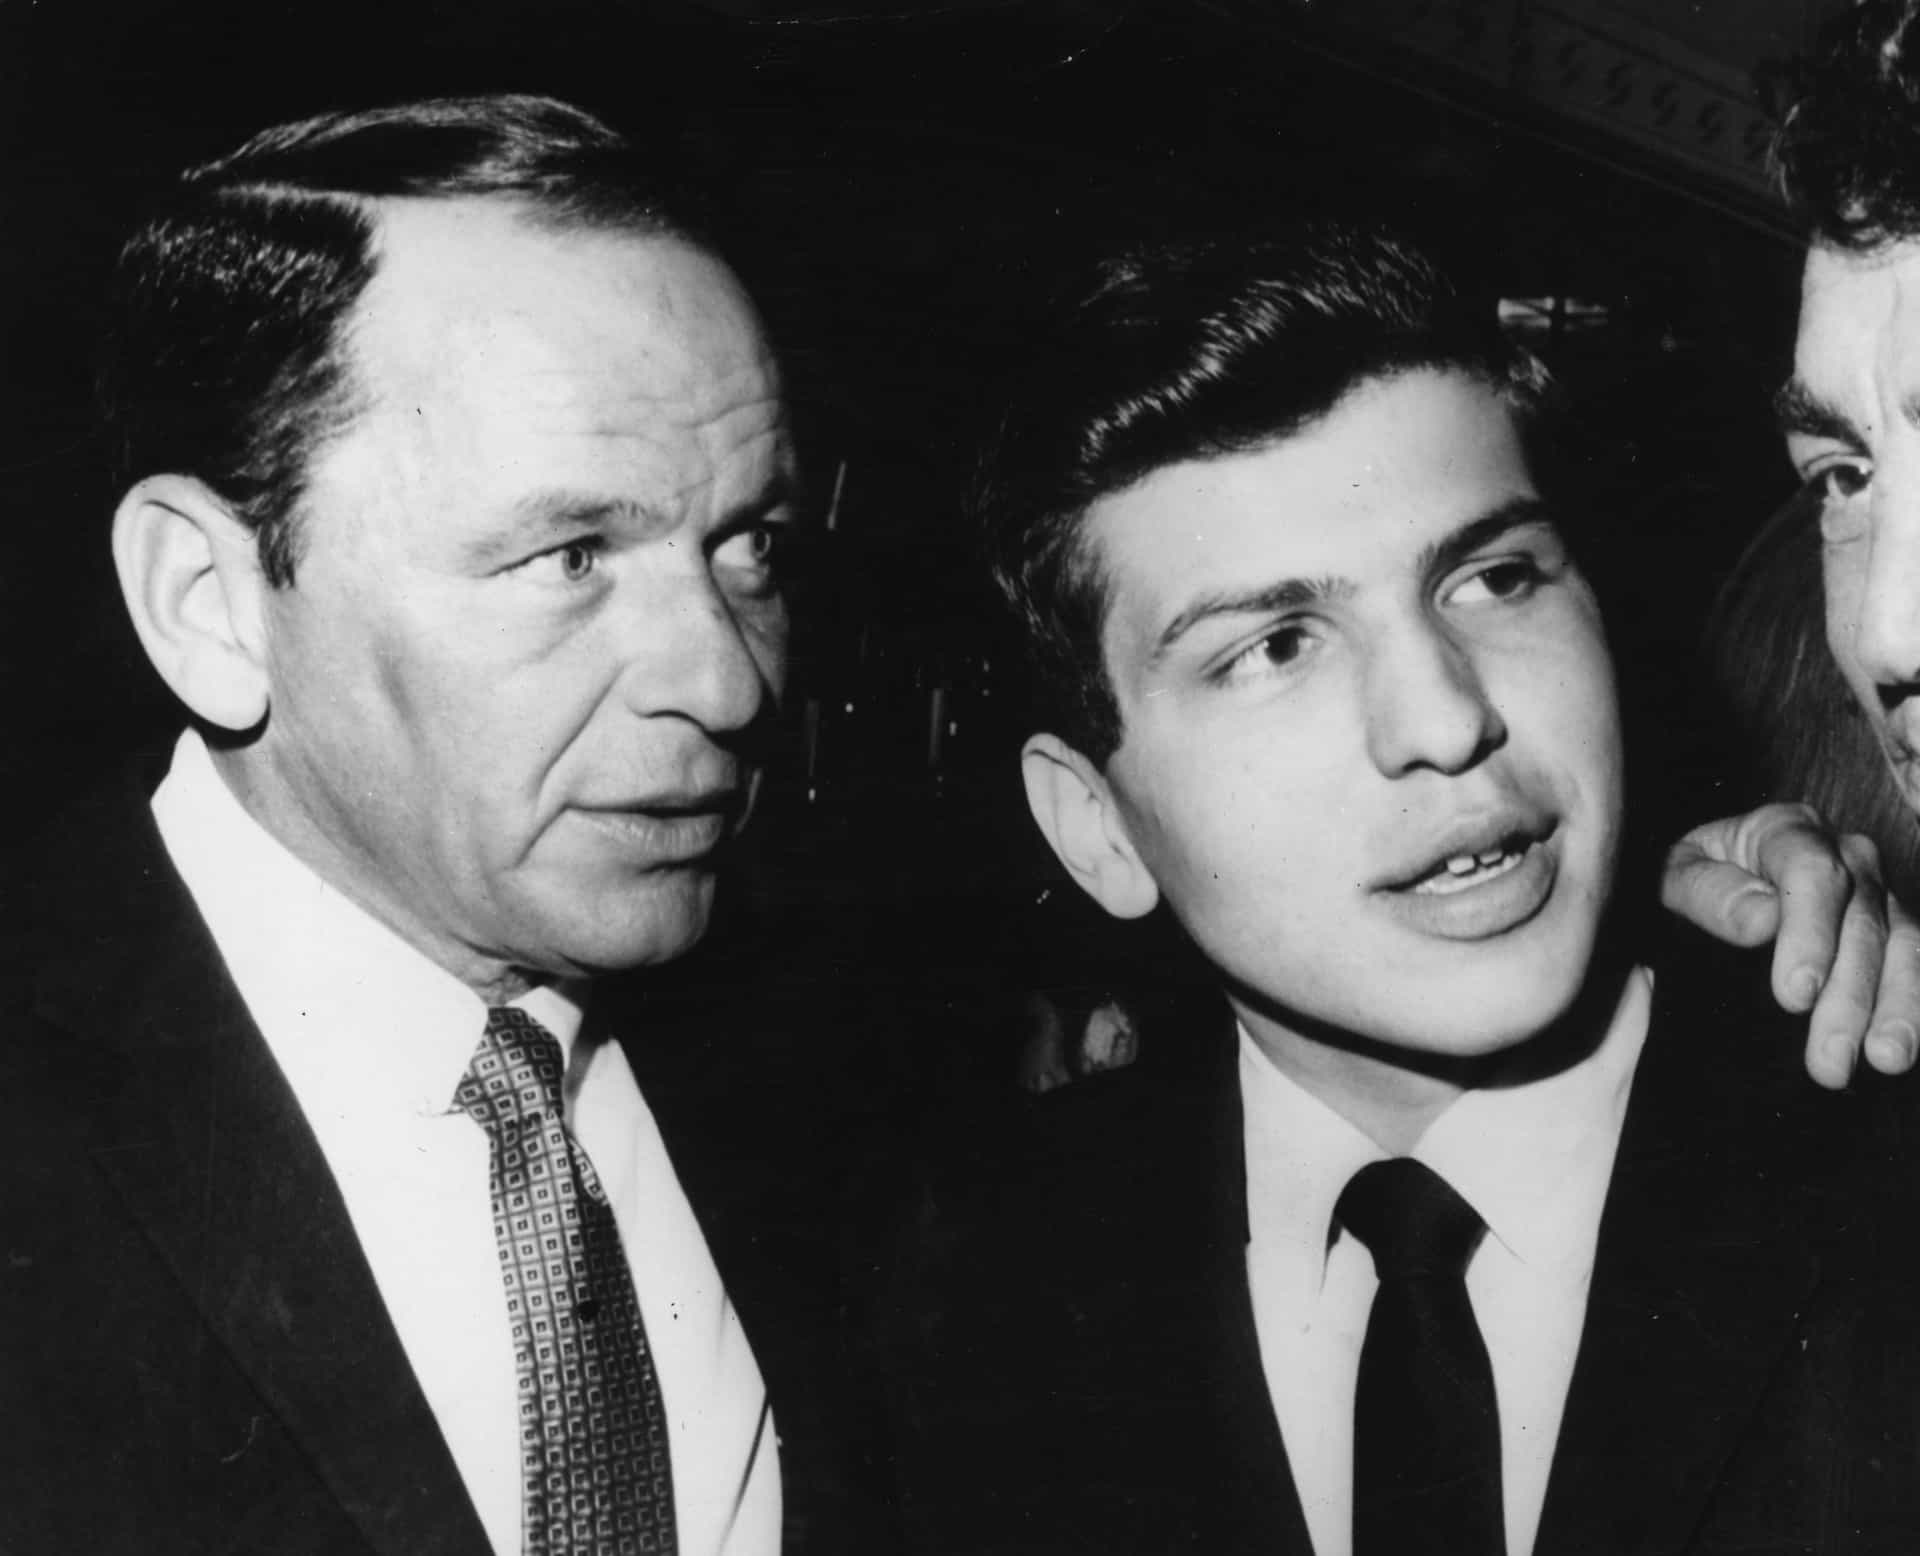 Frank Sinatra mit seinem Sohn Frank Sinatra Jr., der am 8. Dezember 1963 für 56 Stunden entführt wurde, bevor er glücklicherweise unversehrt zurückkam.